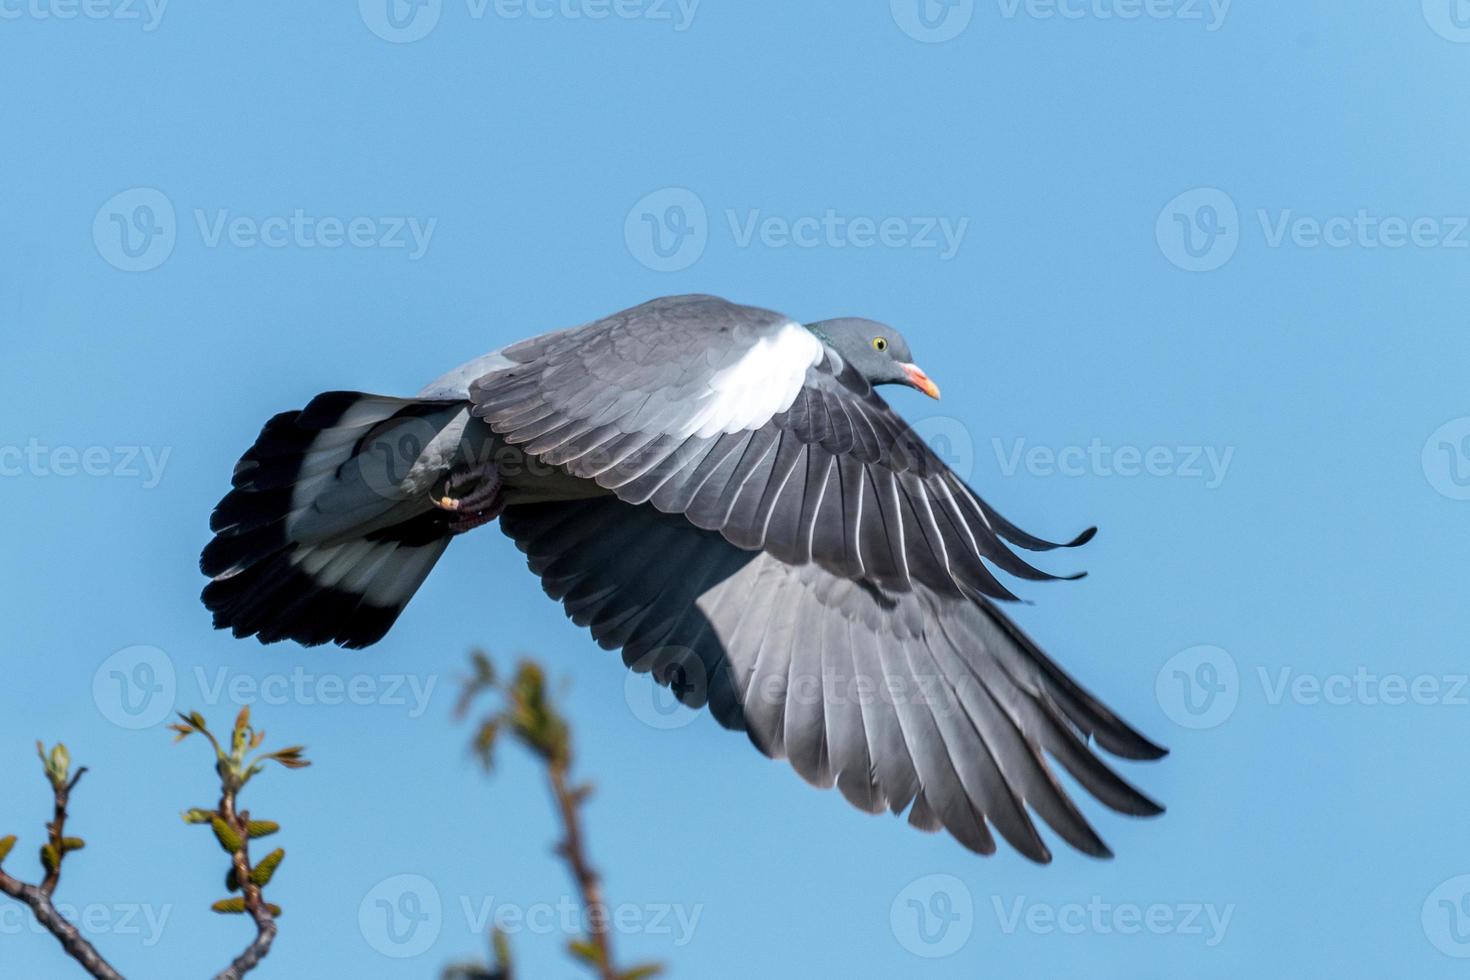 vliegende houtduif met verwarde veren en blauwe lucht foto